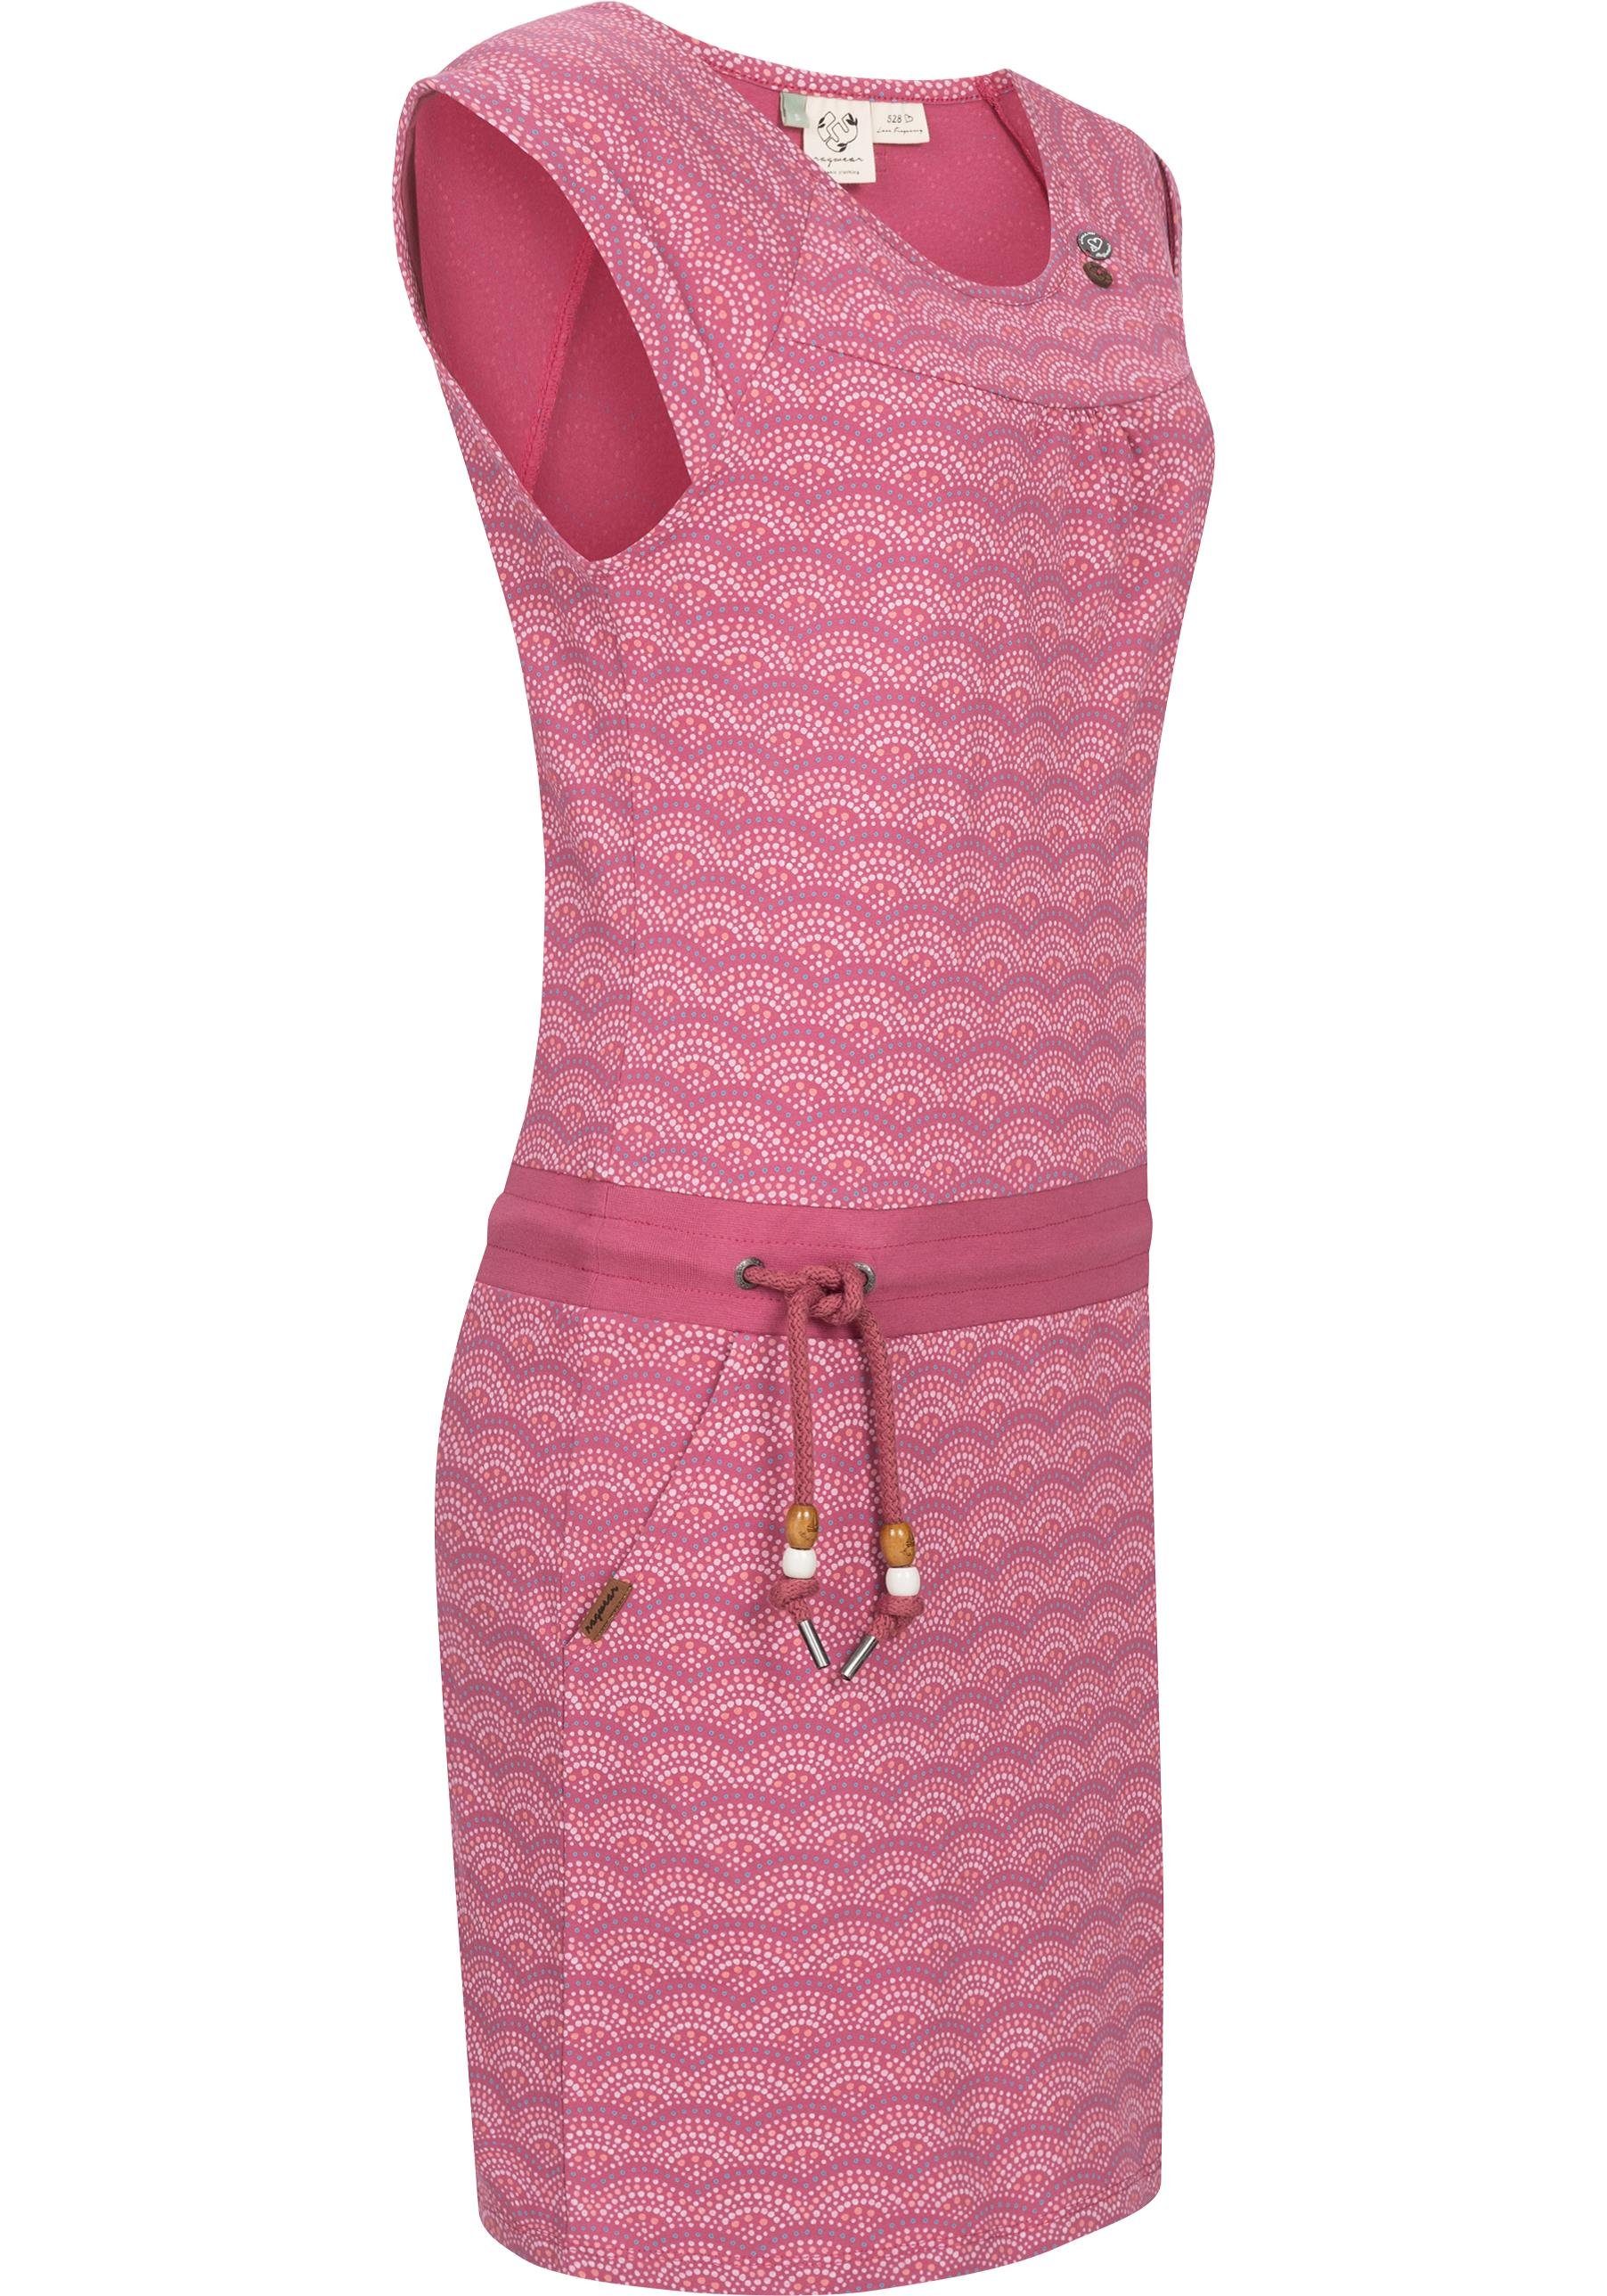 Ragwear Sommerkleid Penelope geeignet mit Print stylischem Jahreszeit C optimal die warme Das Print, Intl. leichtes ist Shirtkleid Strand-Kleid für